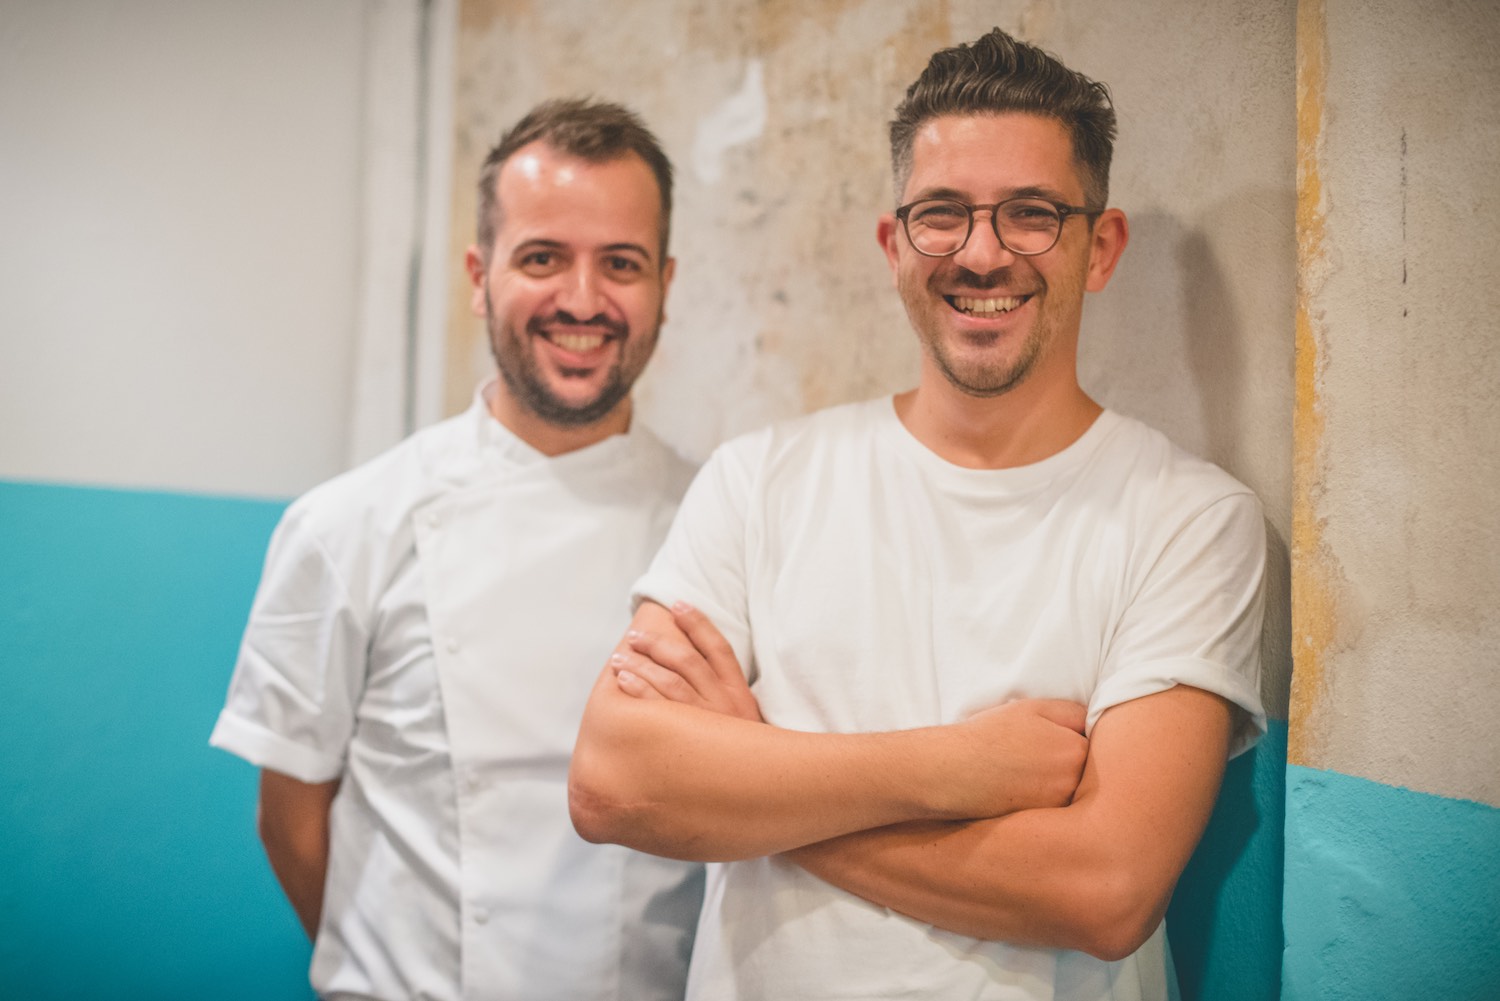 I fratelli Aloe sono alla guida delle pizzerie Berberè, una delle migliori aziende in Toscana.